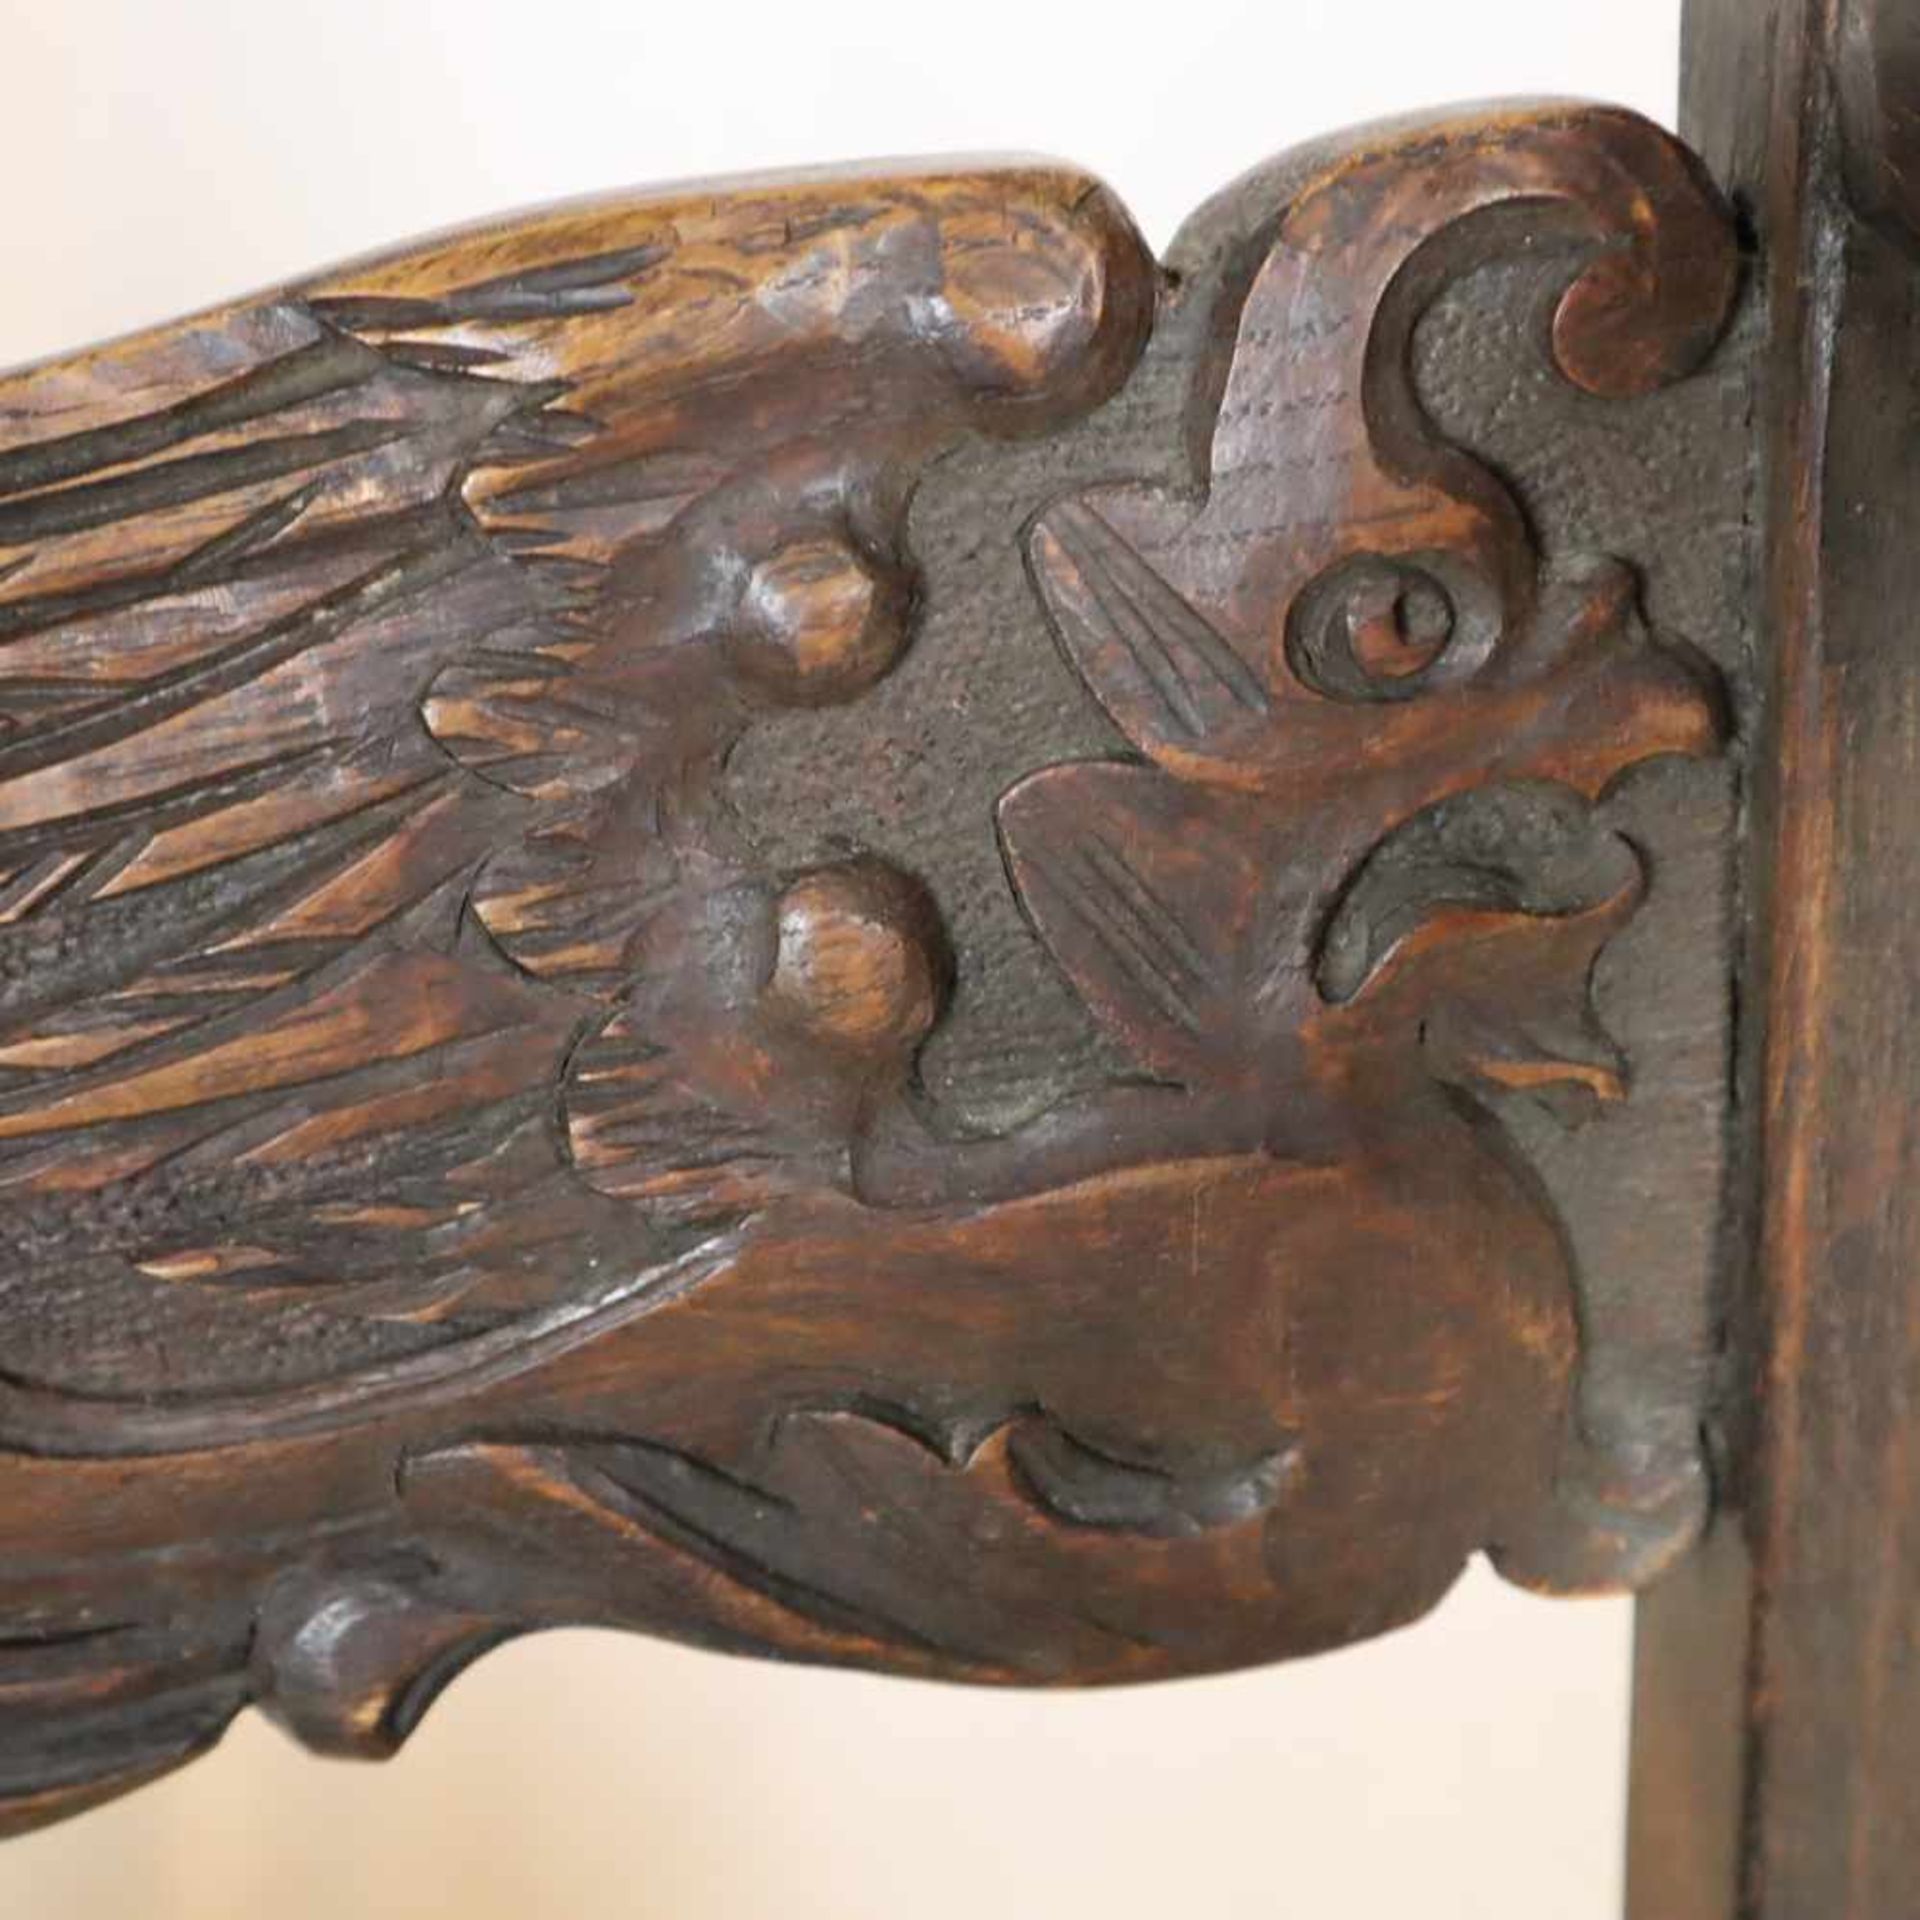 Abtsessel - historistischer Armlehnstuhl, Holz, reich beschnitzt mit Fabeltieren, Rankenwerk sowie - Bild 7 aus 15